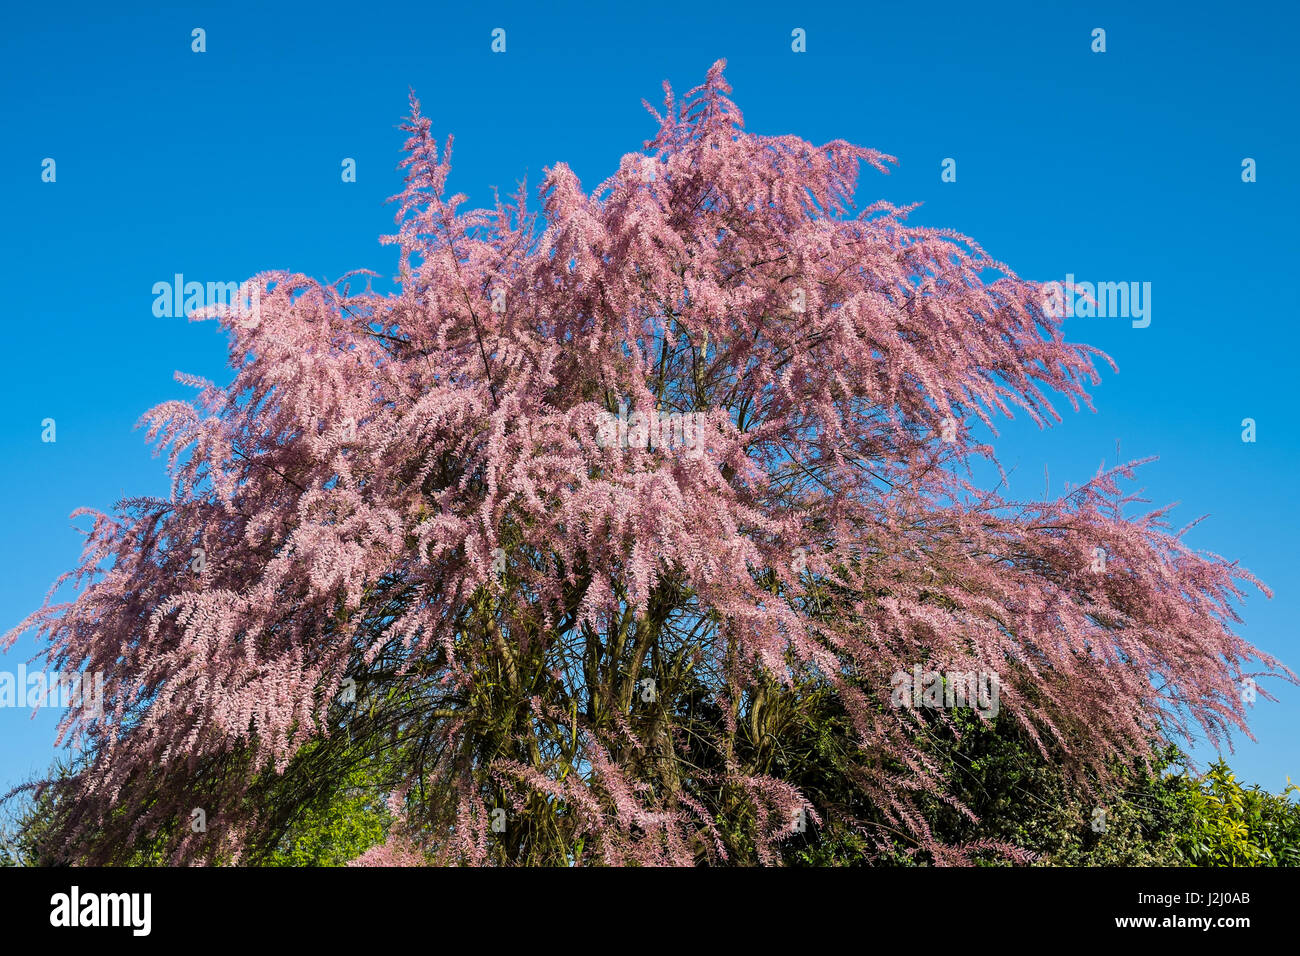 Tamariske (Tamarix Gallica) in voller Blüte - Frankreich. Stockfoto